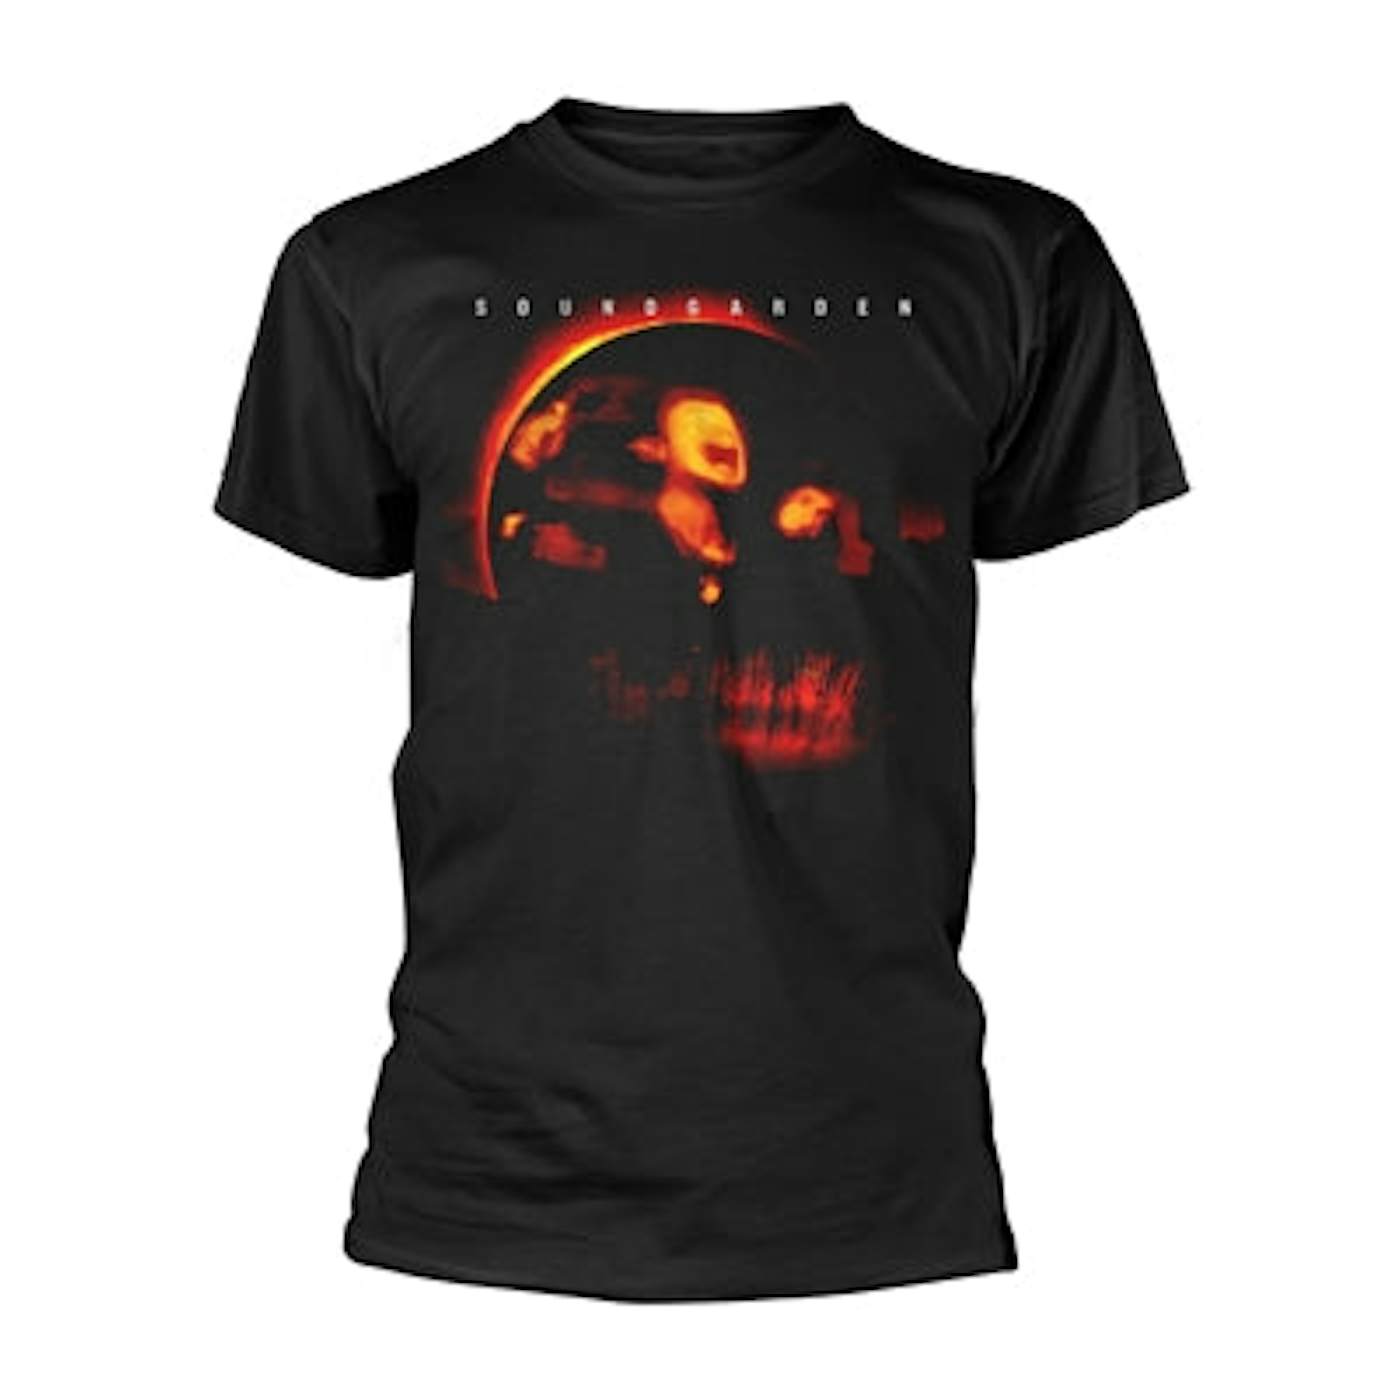 Soundgarden T Shirt - Superunknown